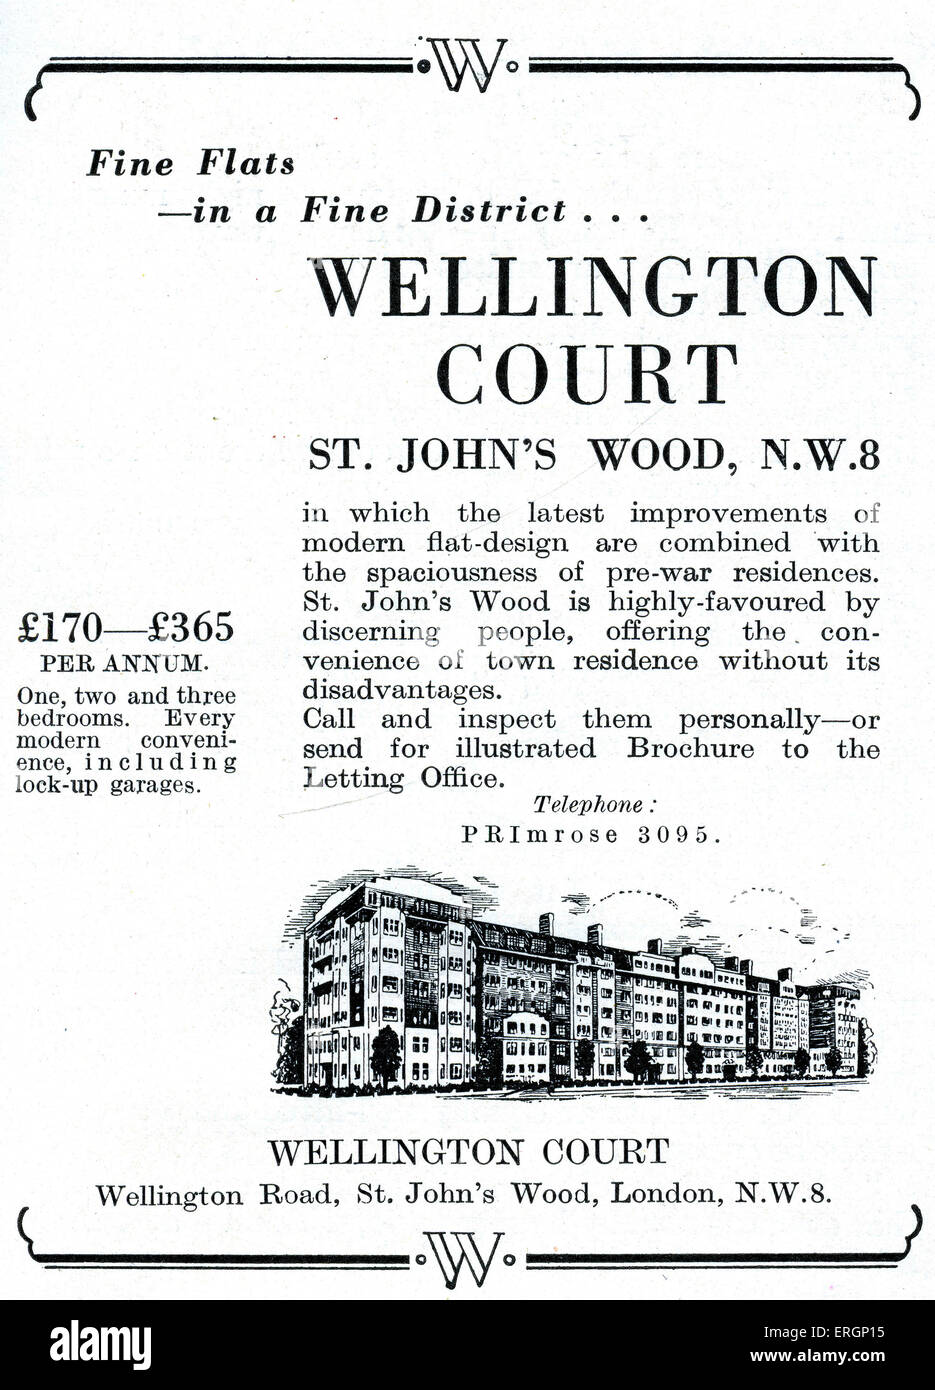 Pubblicità per la Corte di Wellington, St Johns Wood NW8. Affitto appartamenti in blocco di dimora costruita prima della Seconda Guerra Mondiale. Annuncio RECITA:' Fine appartamenti in un bel quartiere..Wellington Corte St John's Wood, NW8 in cui le ultime improvememnts del moderno design piatto ae combinato con ampiezza di pre-guerra residences, St John's Wood è fortemente favorita dalla persone esigenti…£170 - £365 per anno uno, due e tre camere da letto. Ogni moderna comodità tra cui lock-up garages.". Foto Stock